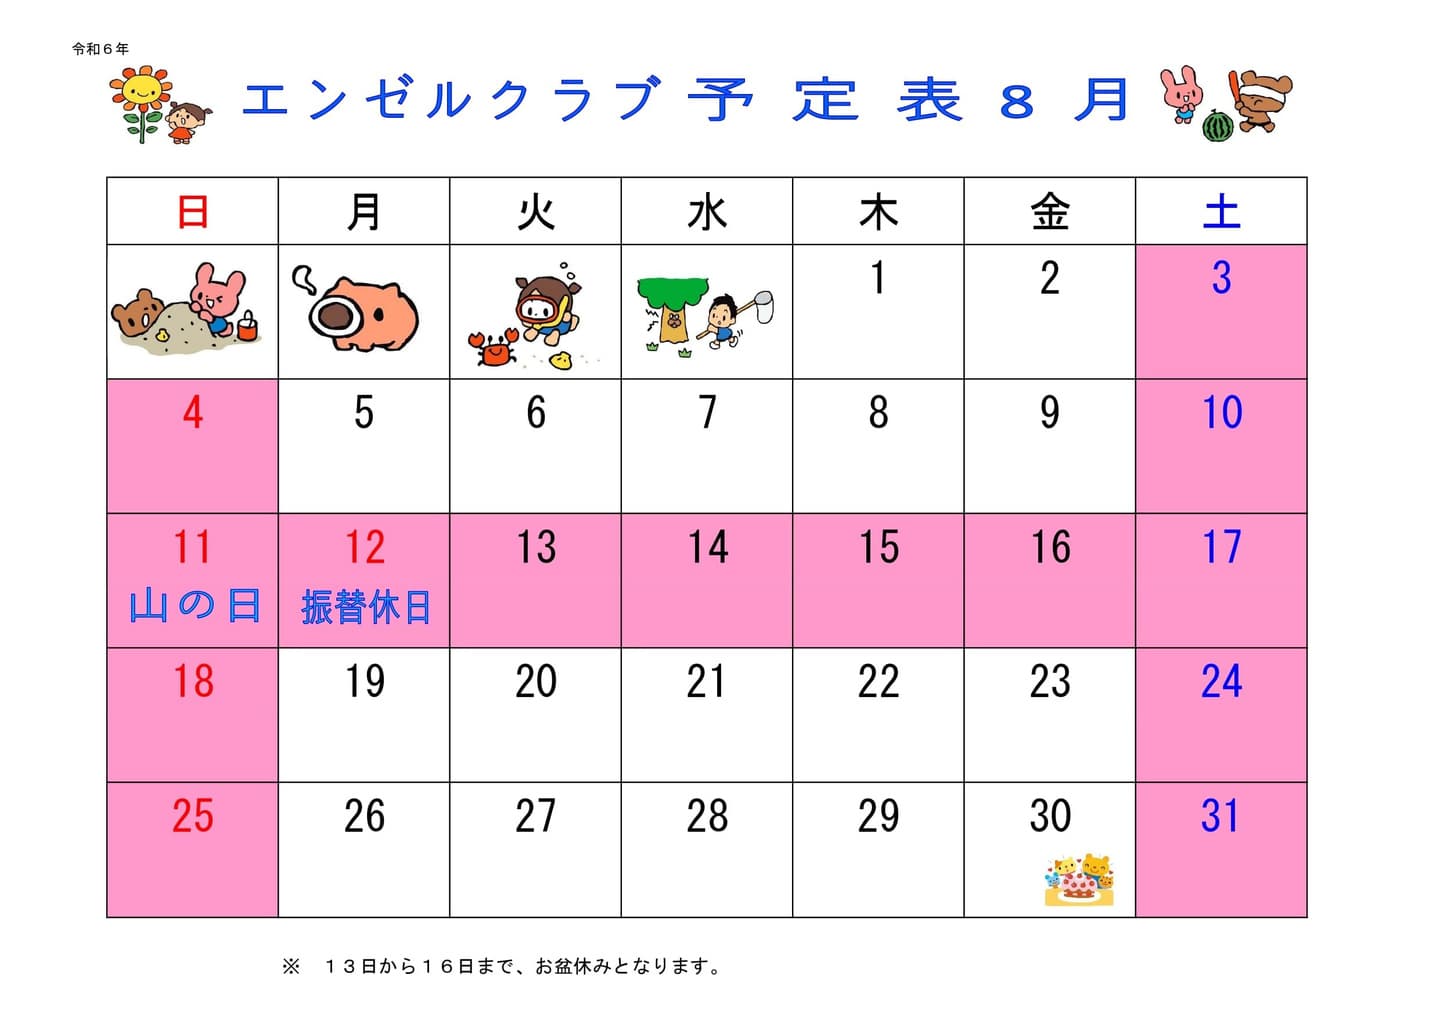  schedule1